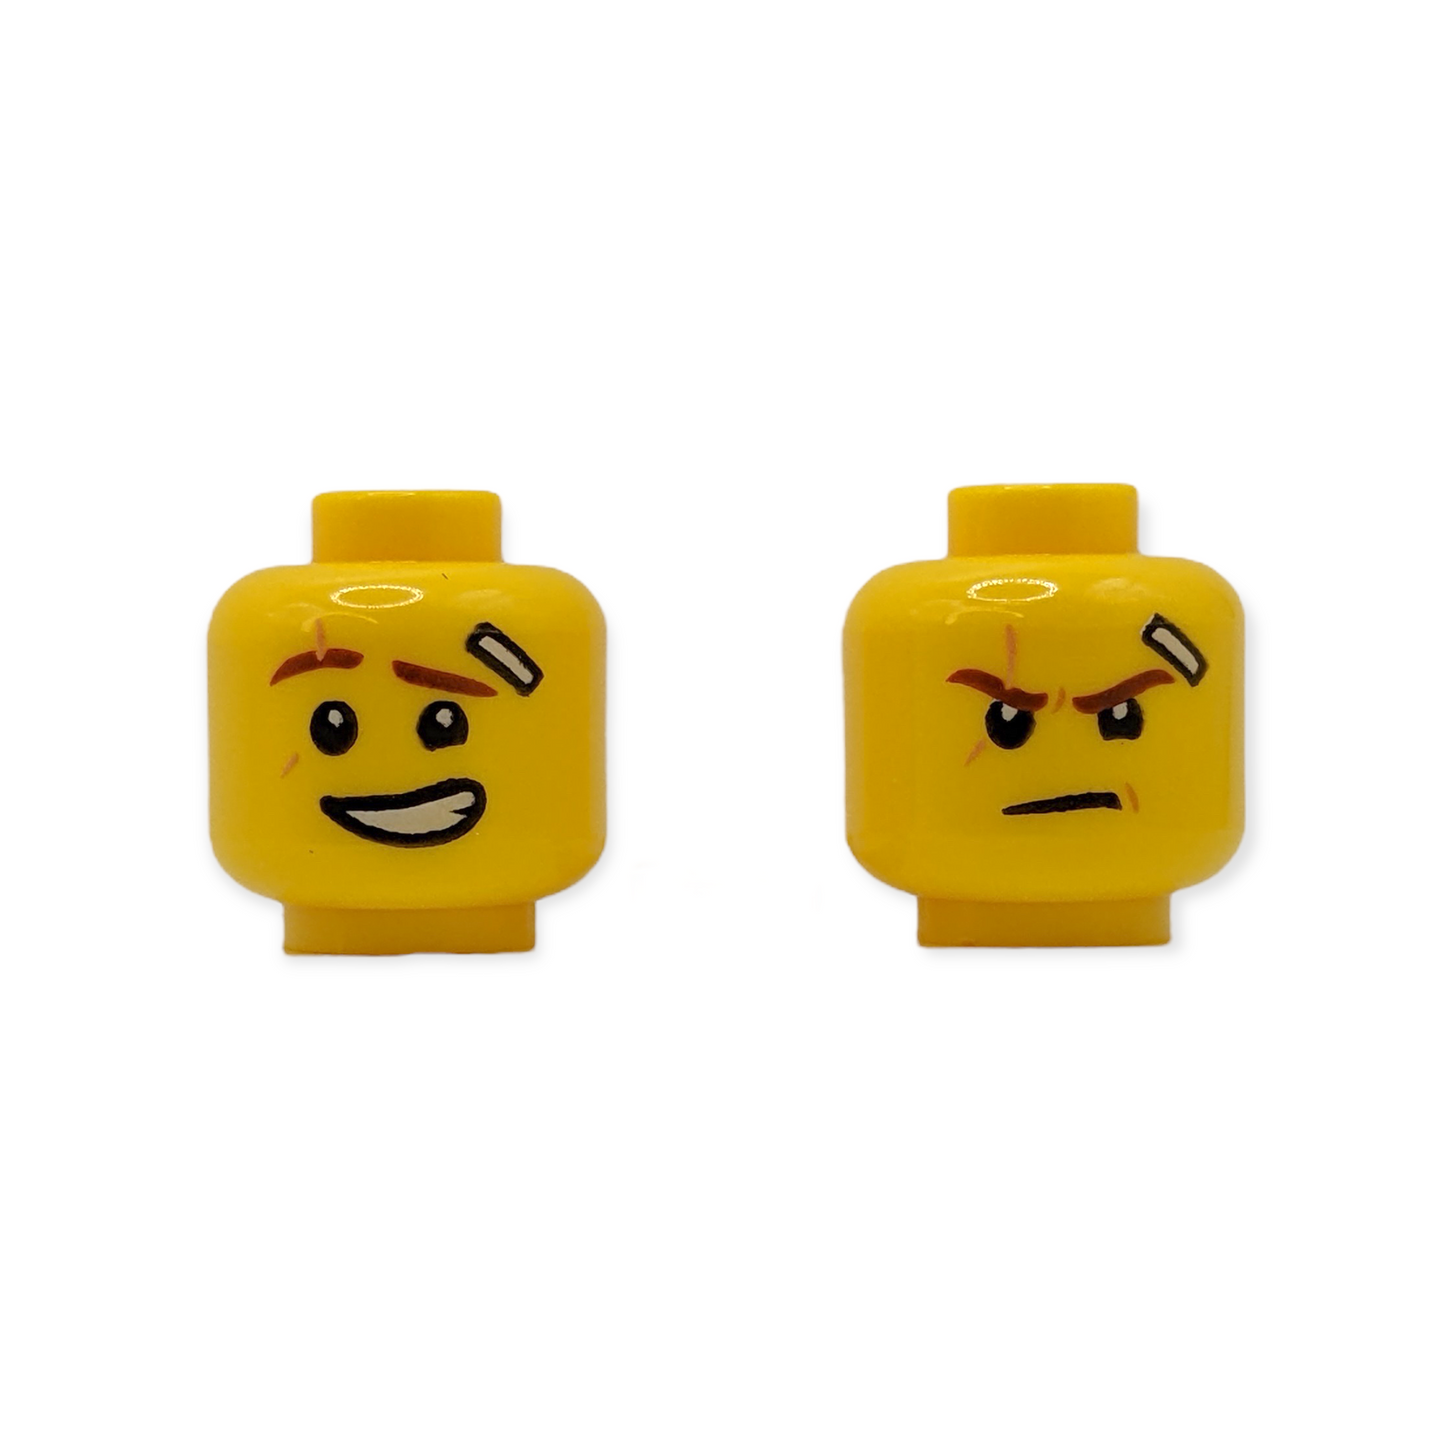 LEGO Head - 2256 Dual Sided Reddish Brown Eyebrows